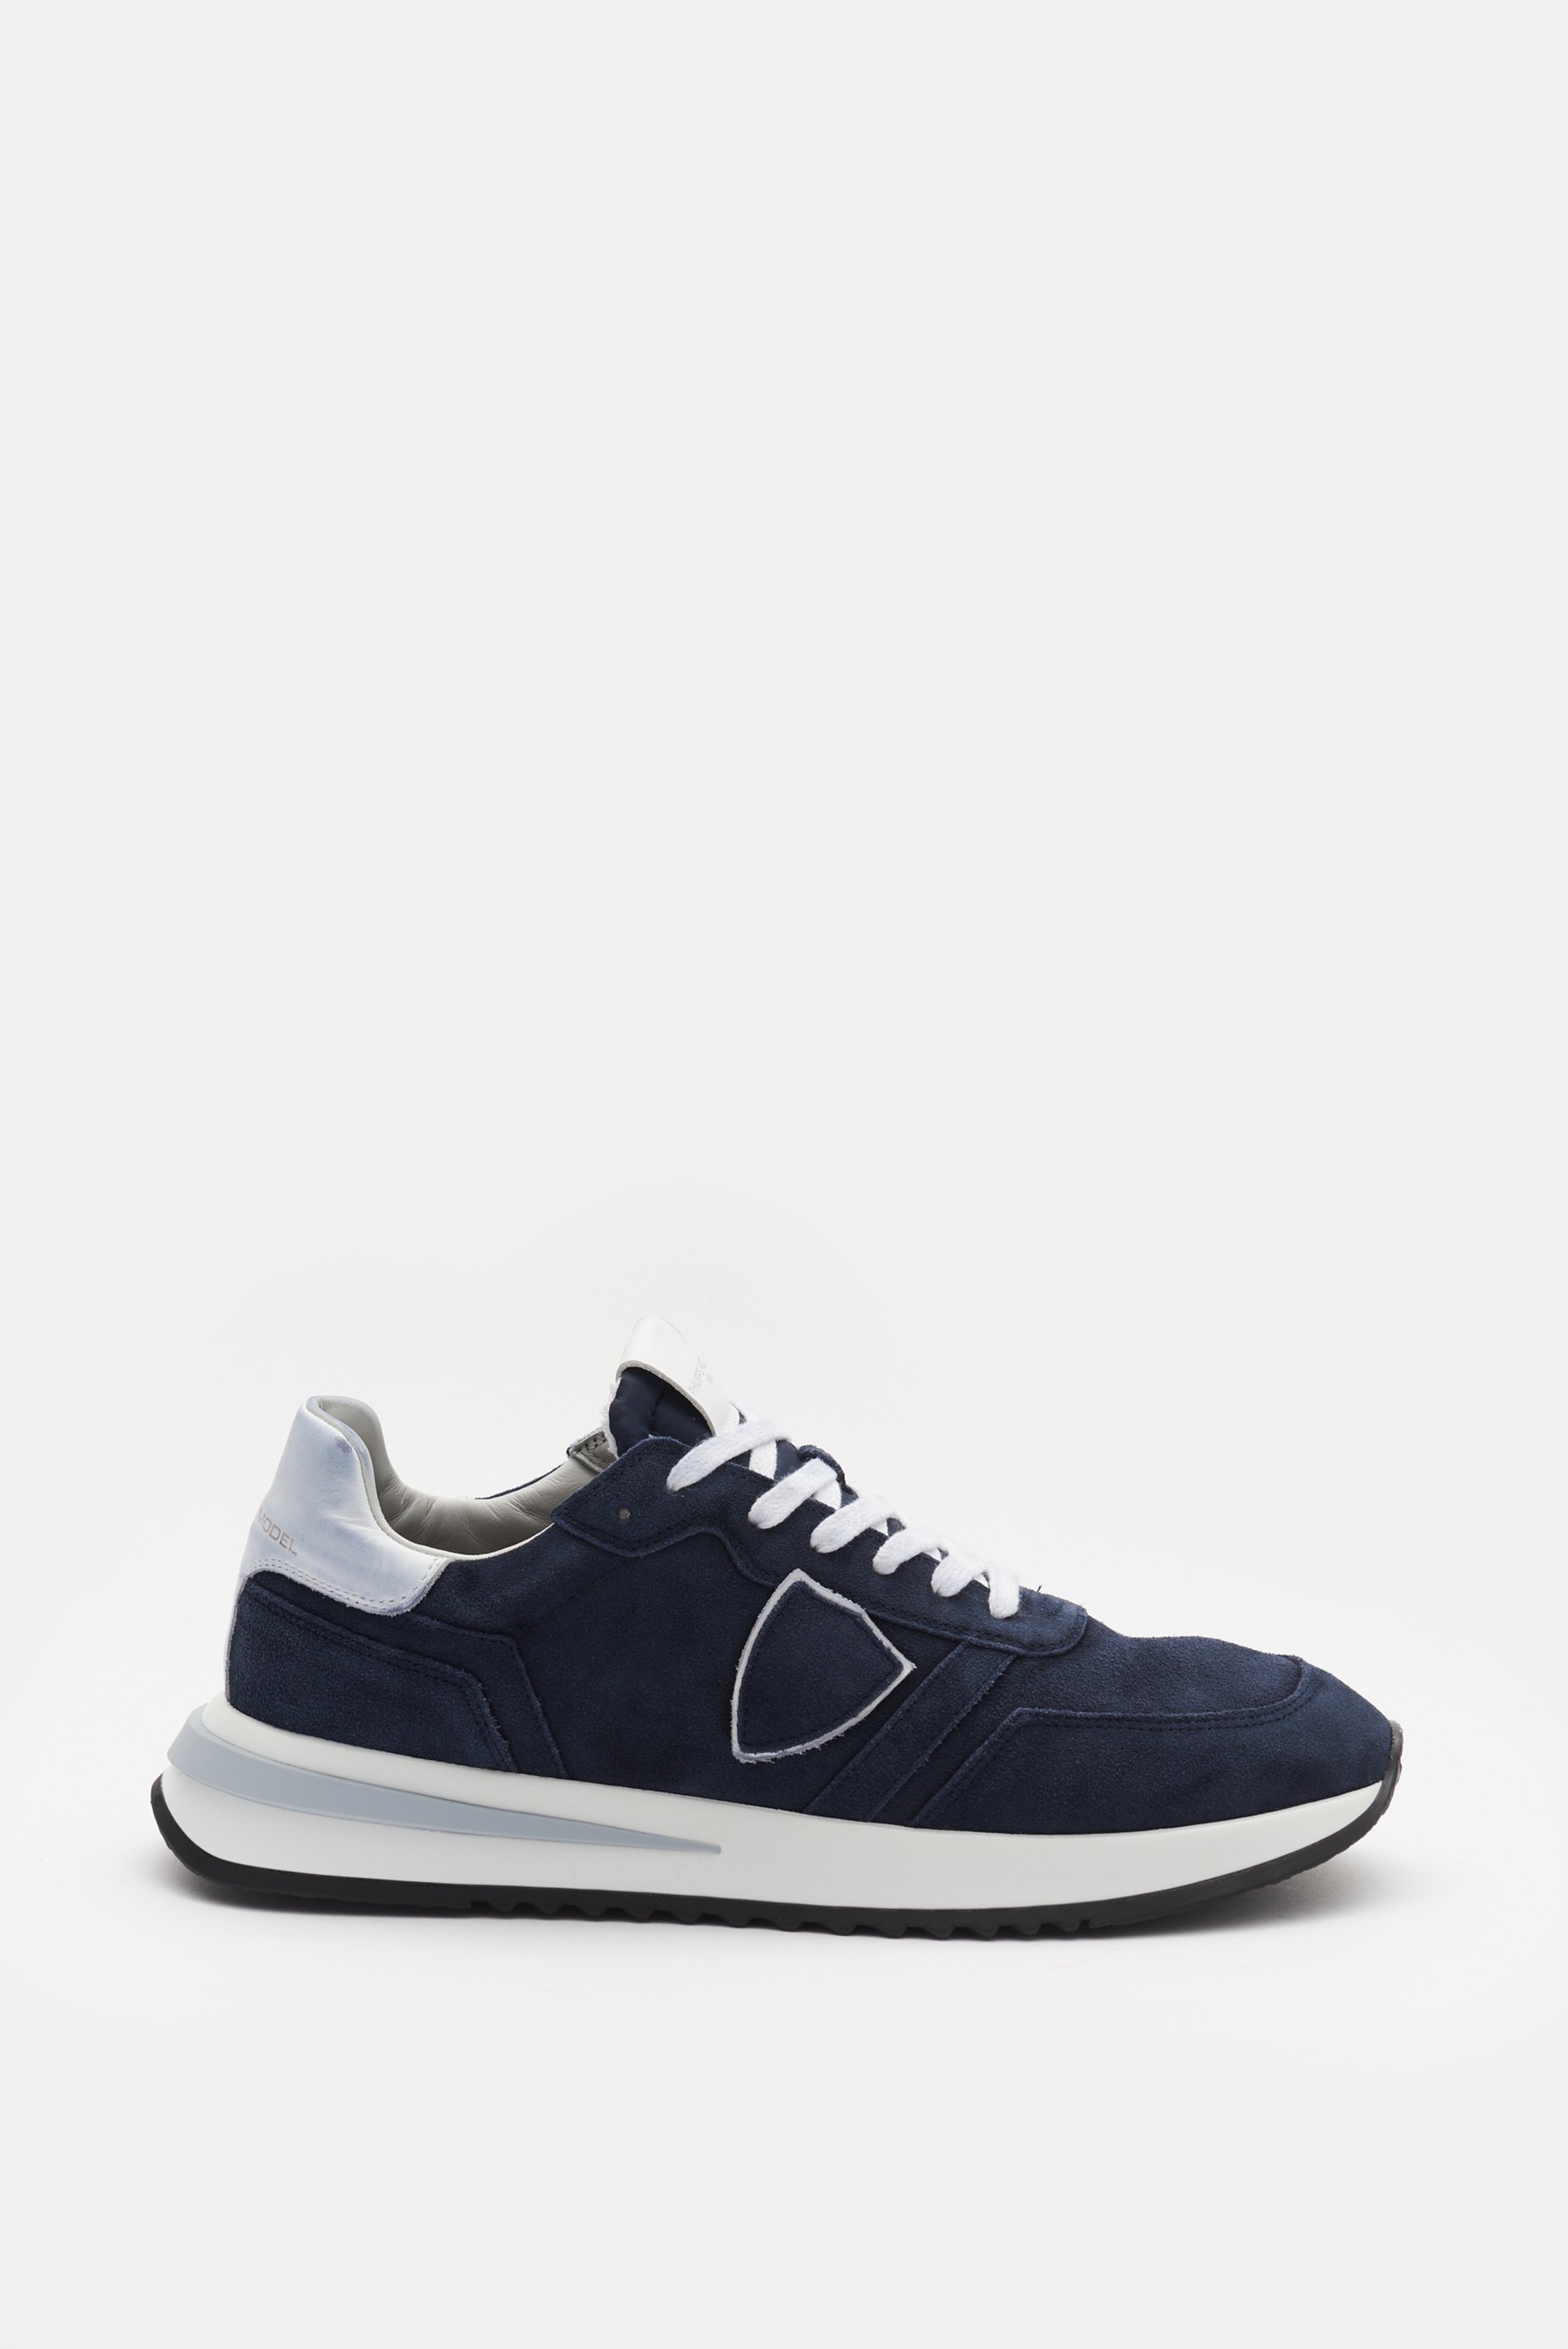 Philippe Model  - Herren - Sneaker 'Tropez 2.1' navy/weiß product